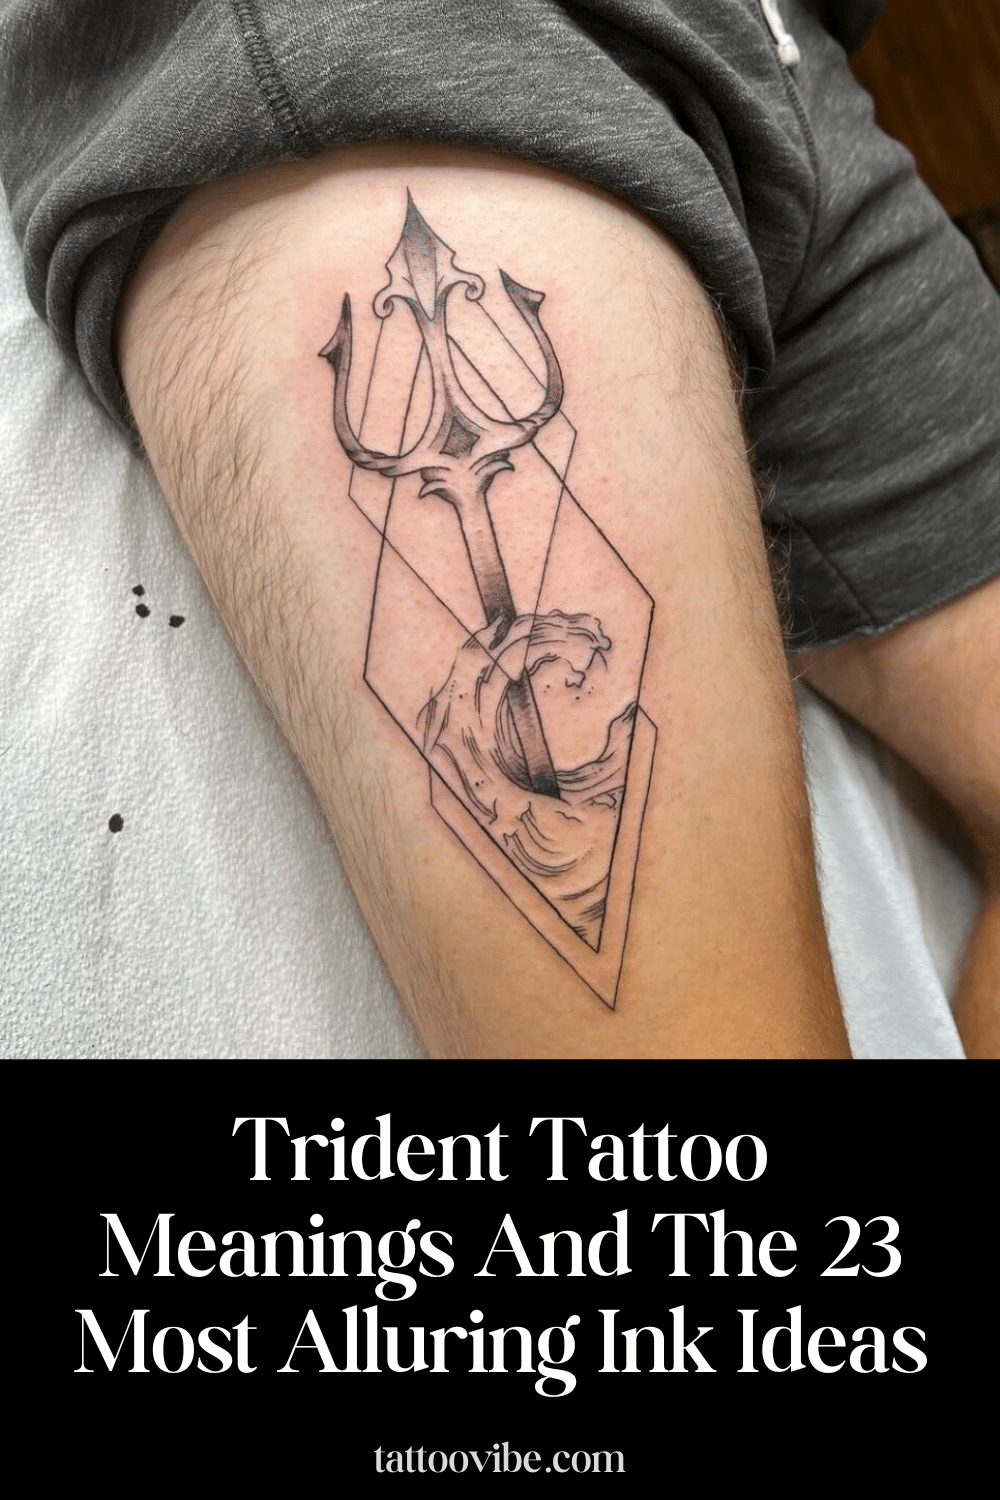 Trident Tattoo Meanings And The 23 Most Alluring Ink Ideas (Signification du tatouage Trident et les 23 idées d'encre les plus séduisantes)